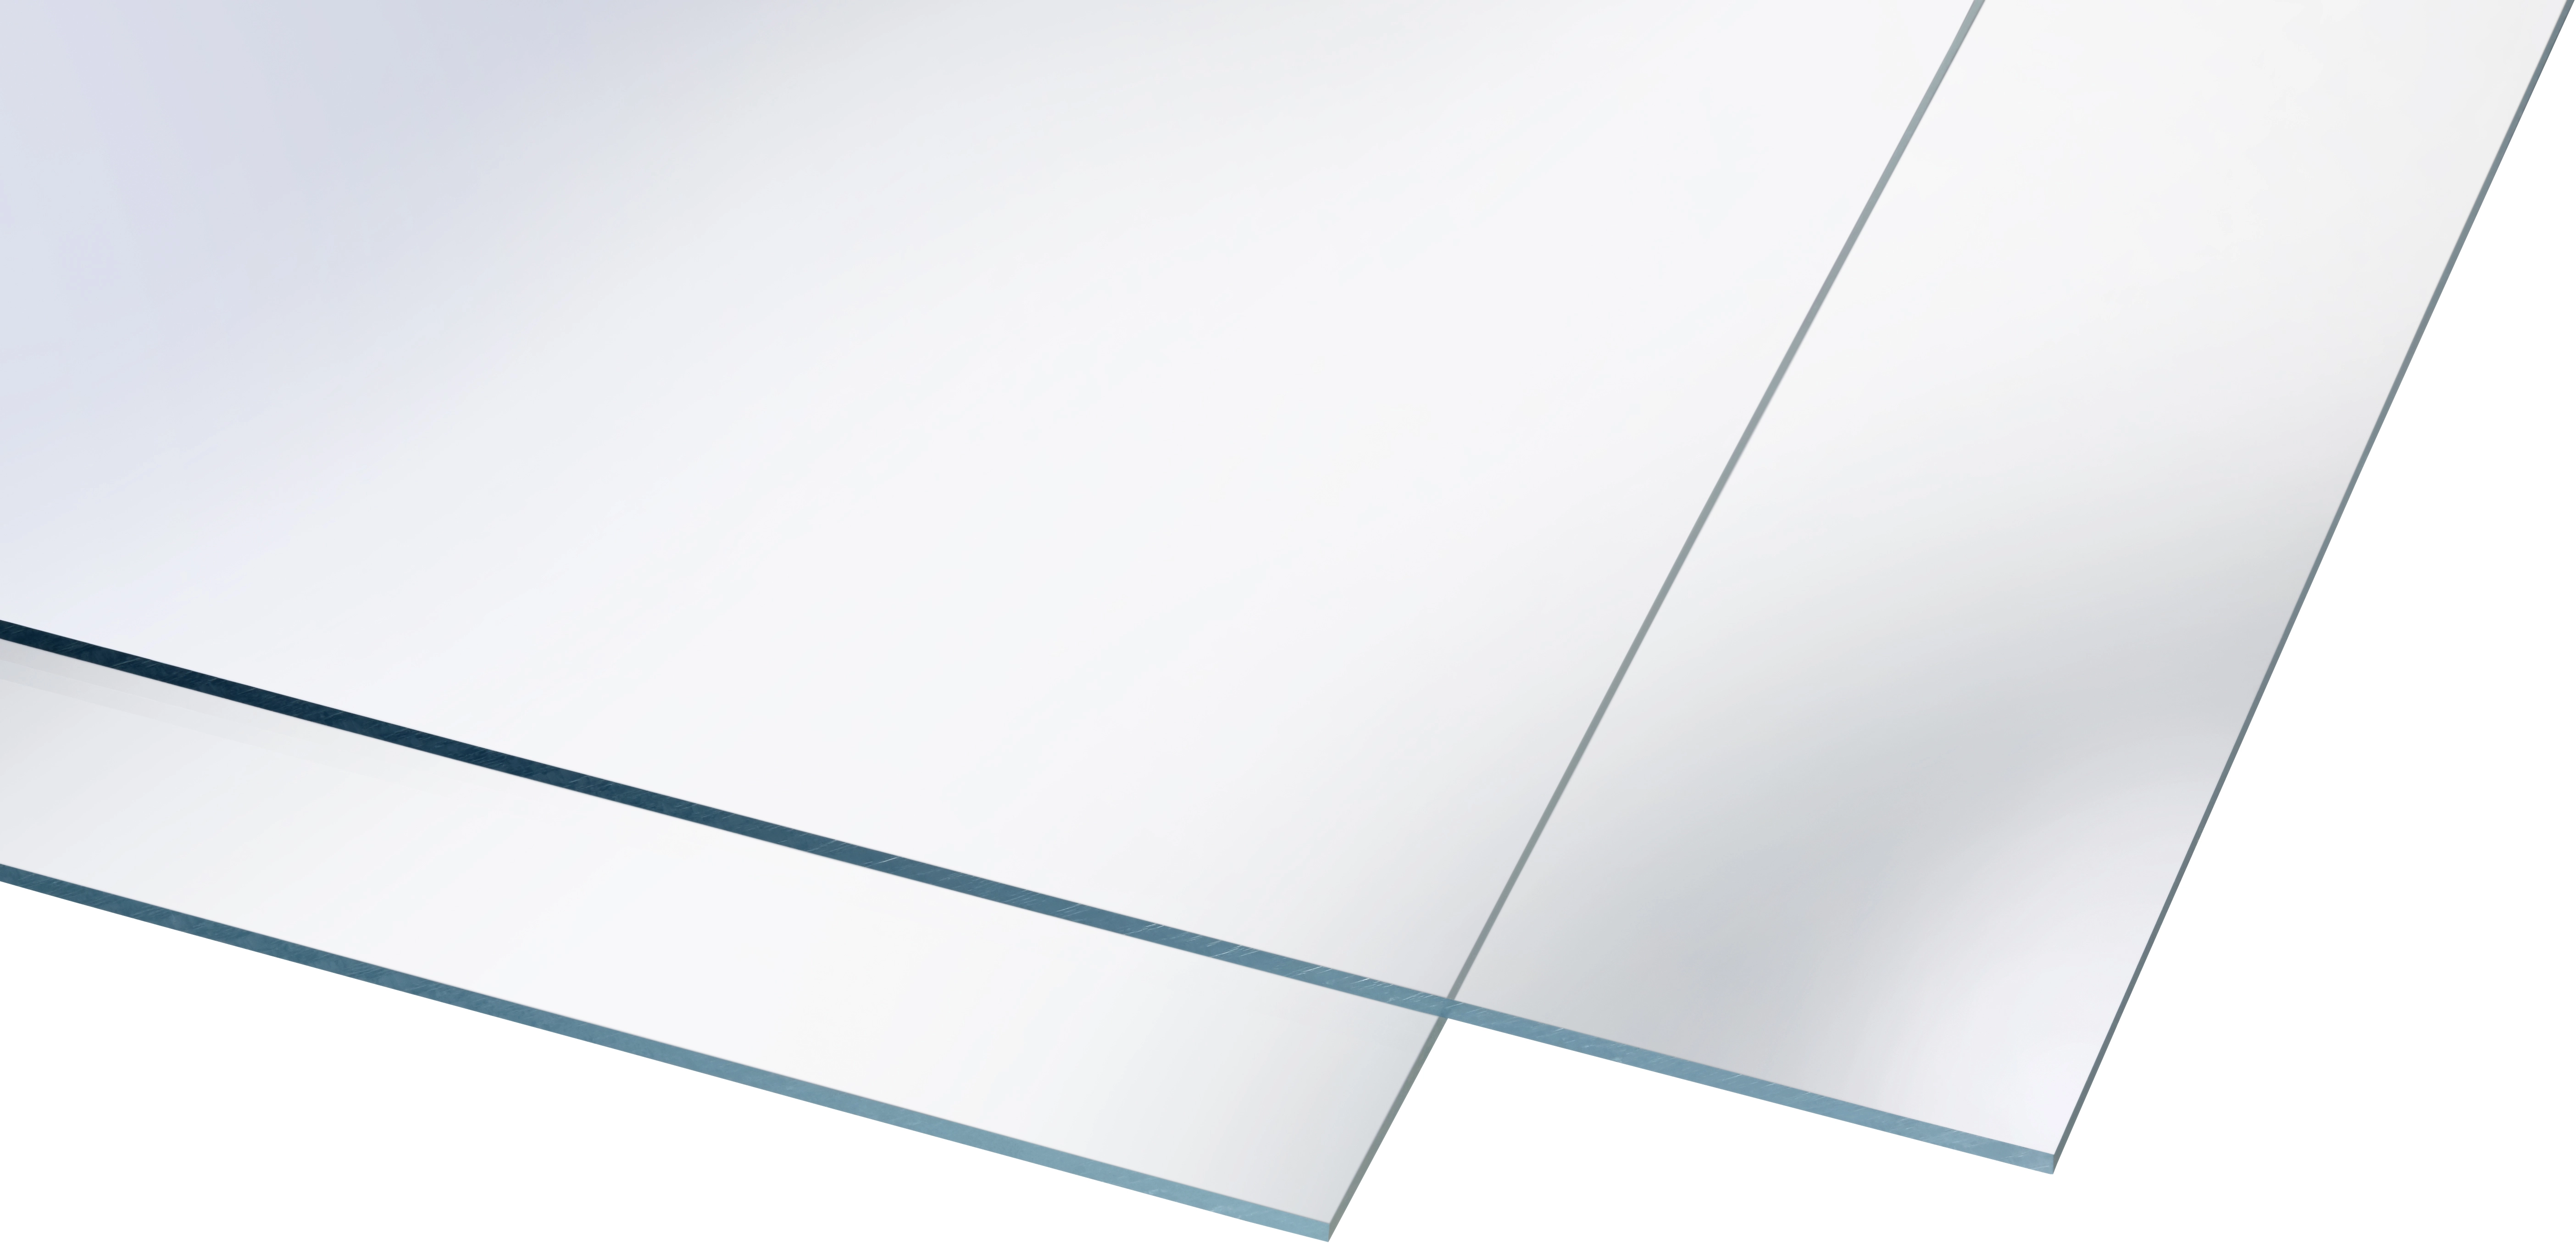 Panneau acrylique lisse Transparent 190 x 95 cm / ép. 6 mm